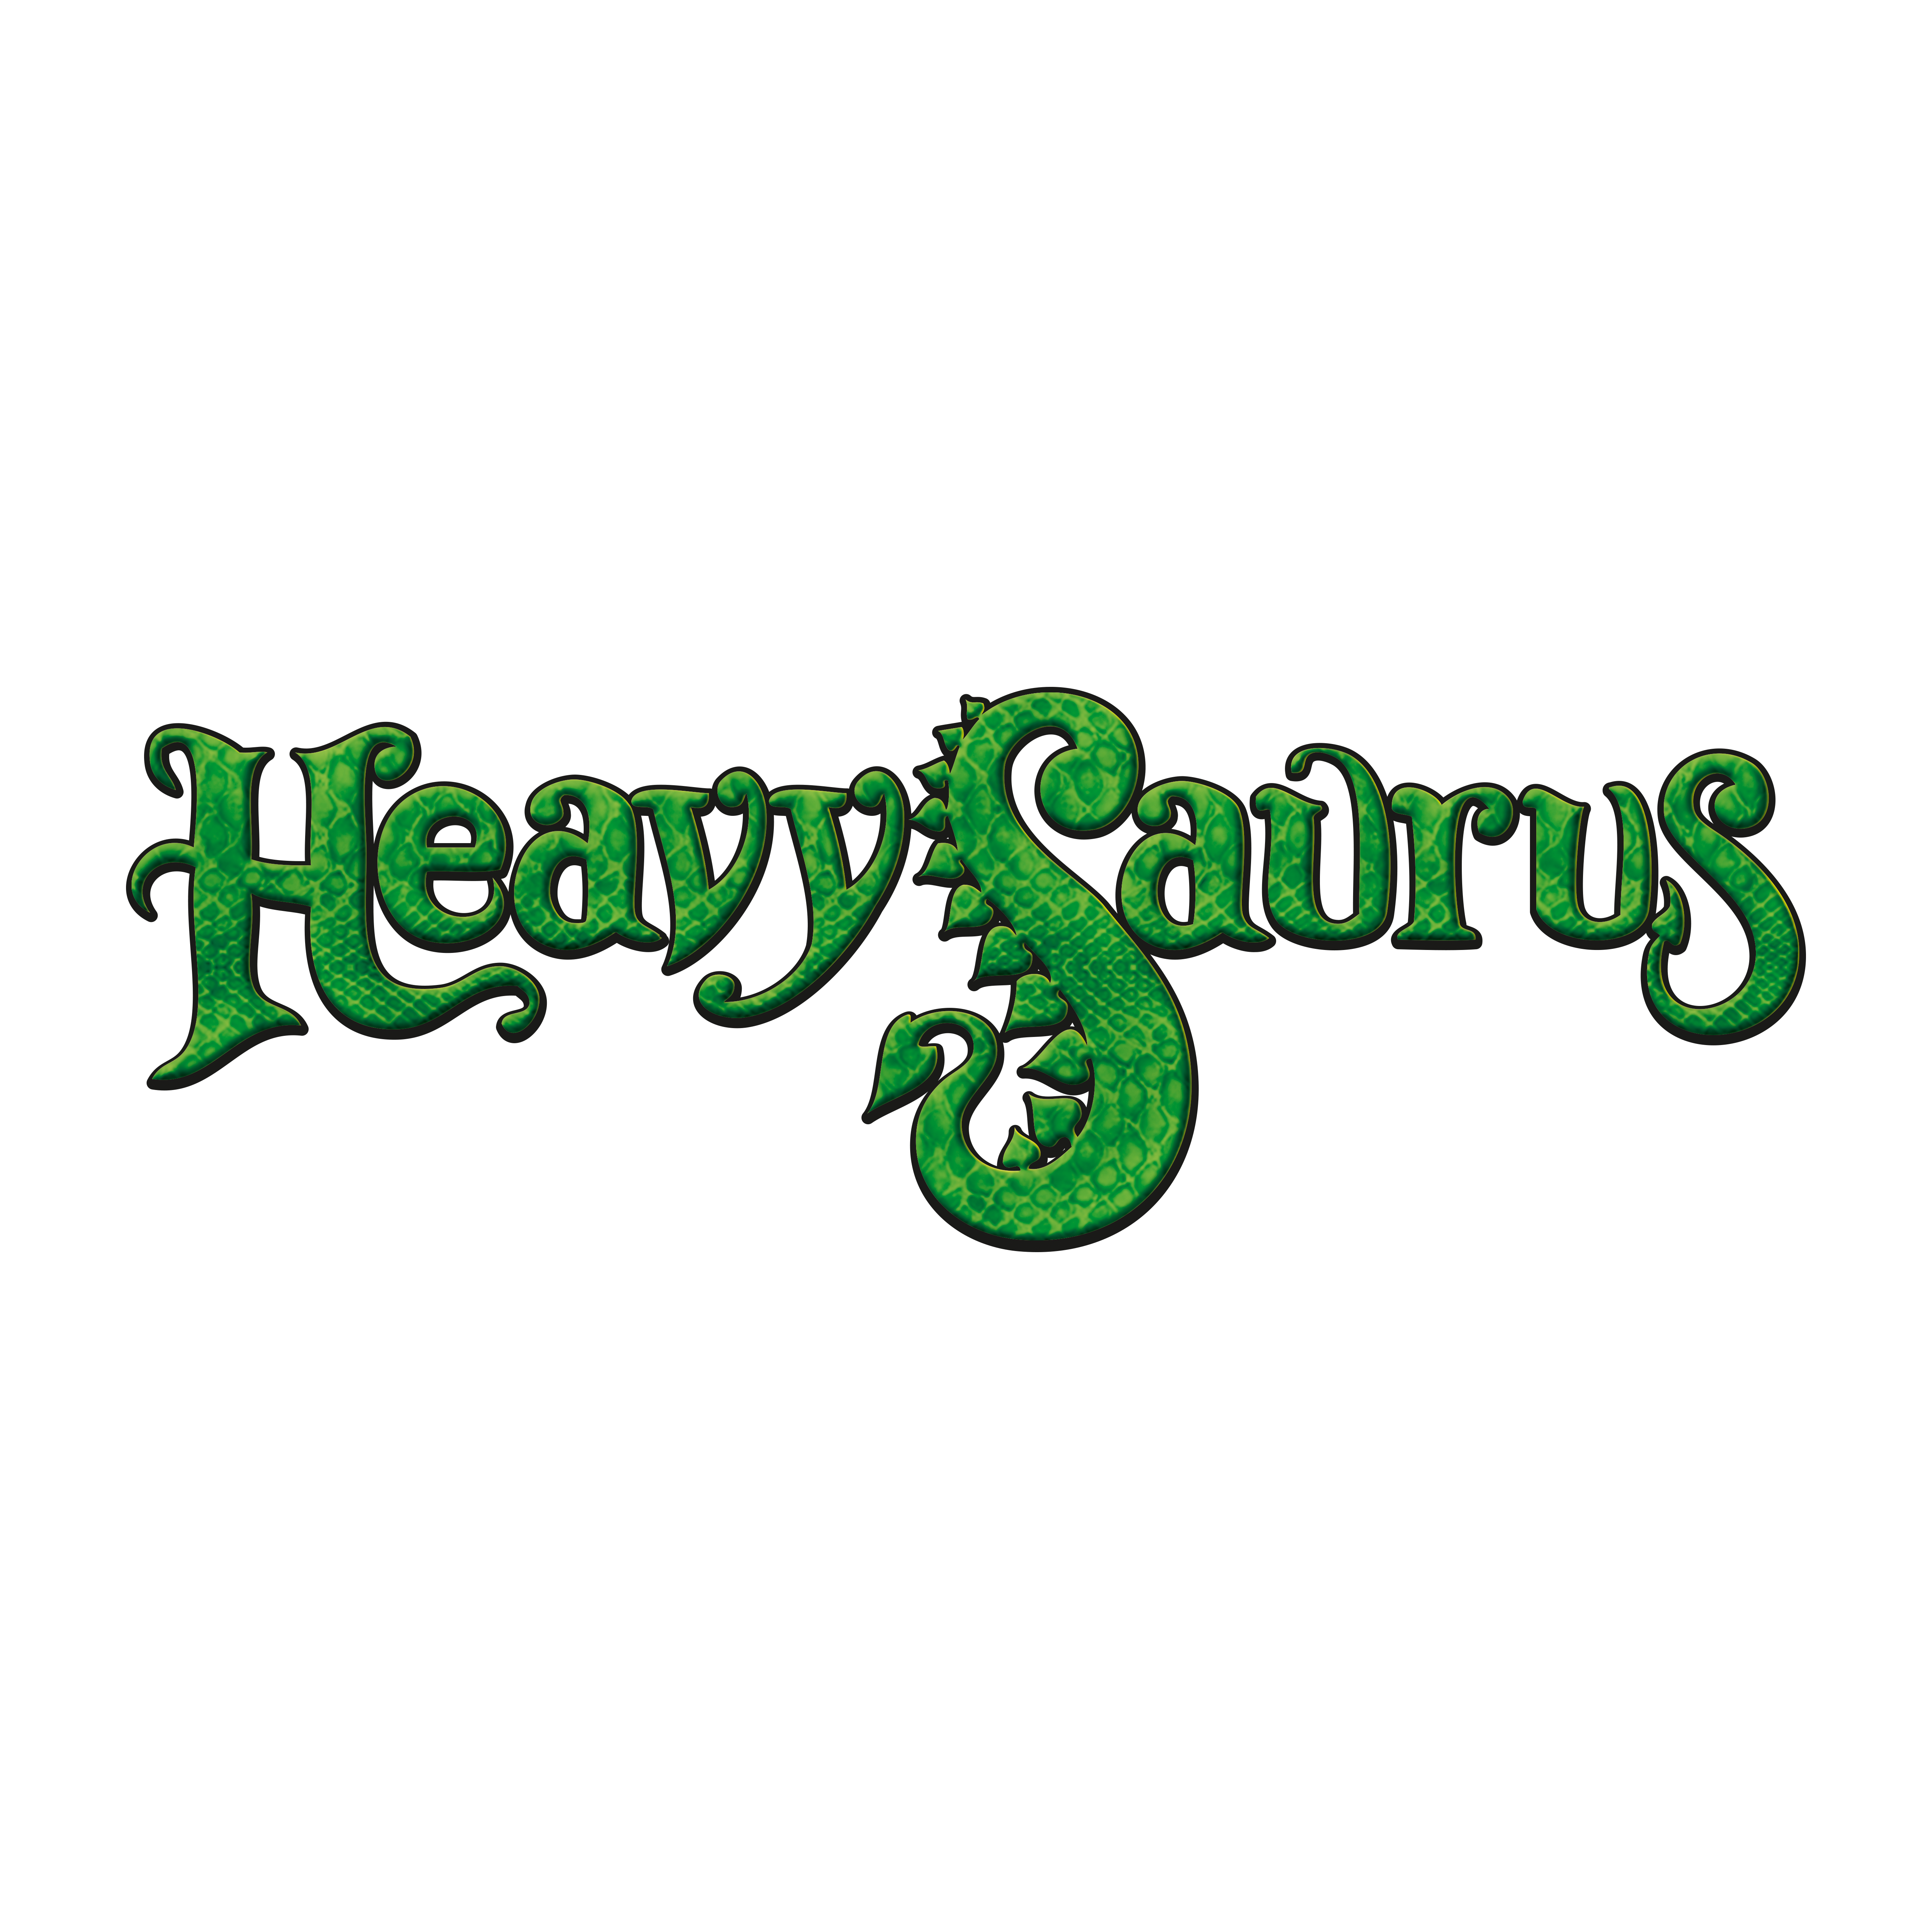 Heavysaurus - Music Merch GmbH